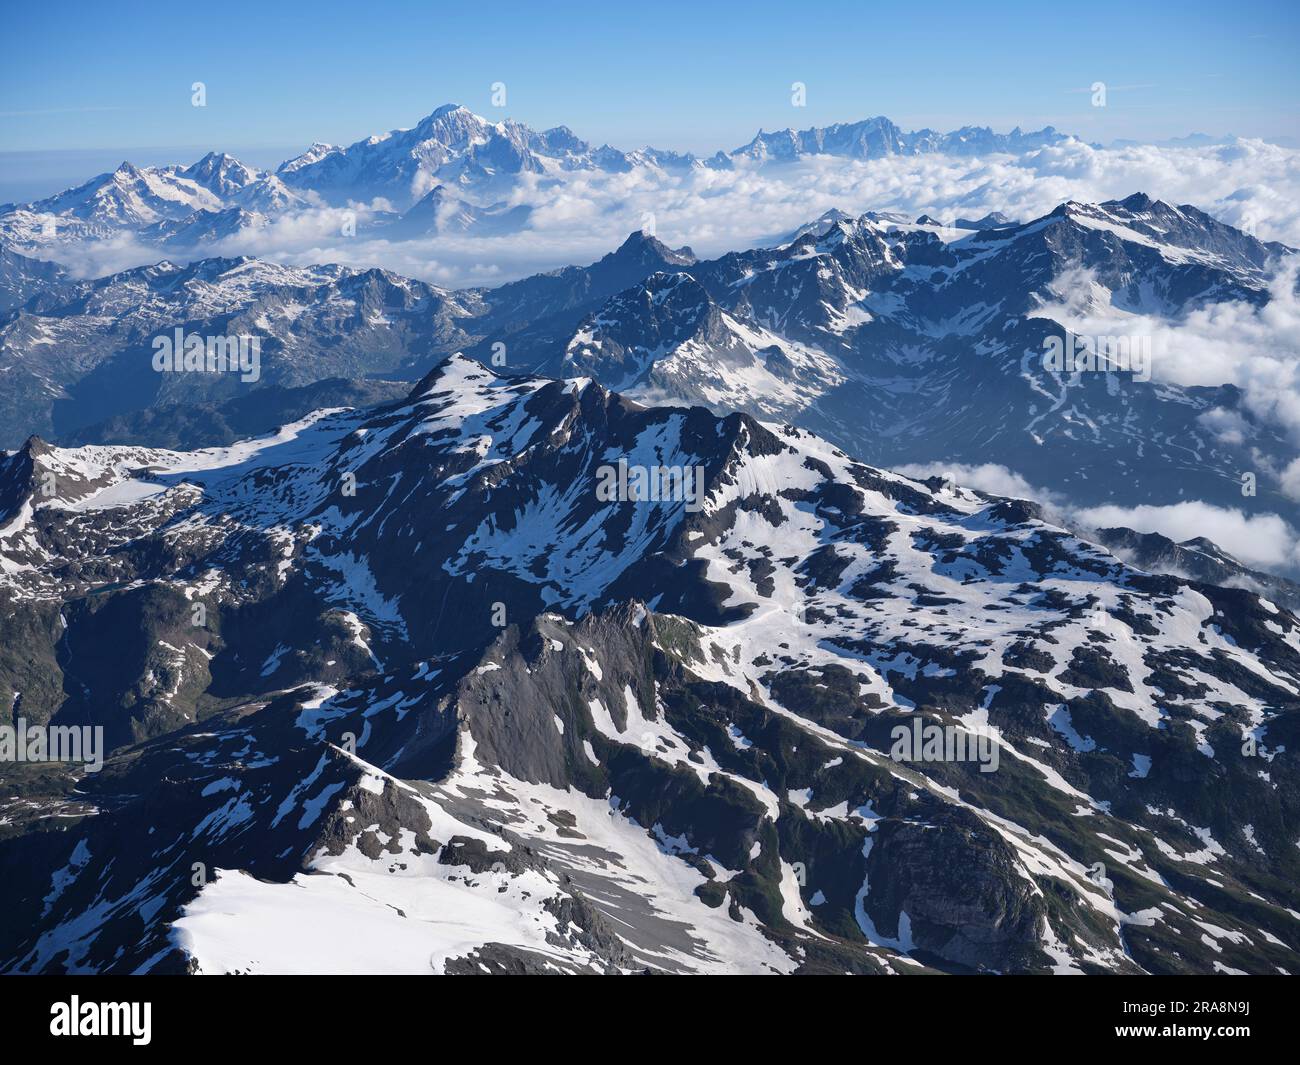 VUE AÉRIENNE. Paysage montagneux de la haute vallée de la Valgrisenche avec le massif du Mont-blanc au loin. Vallée d'Aoste, Italie. Banque D'Images